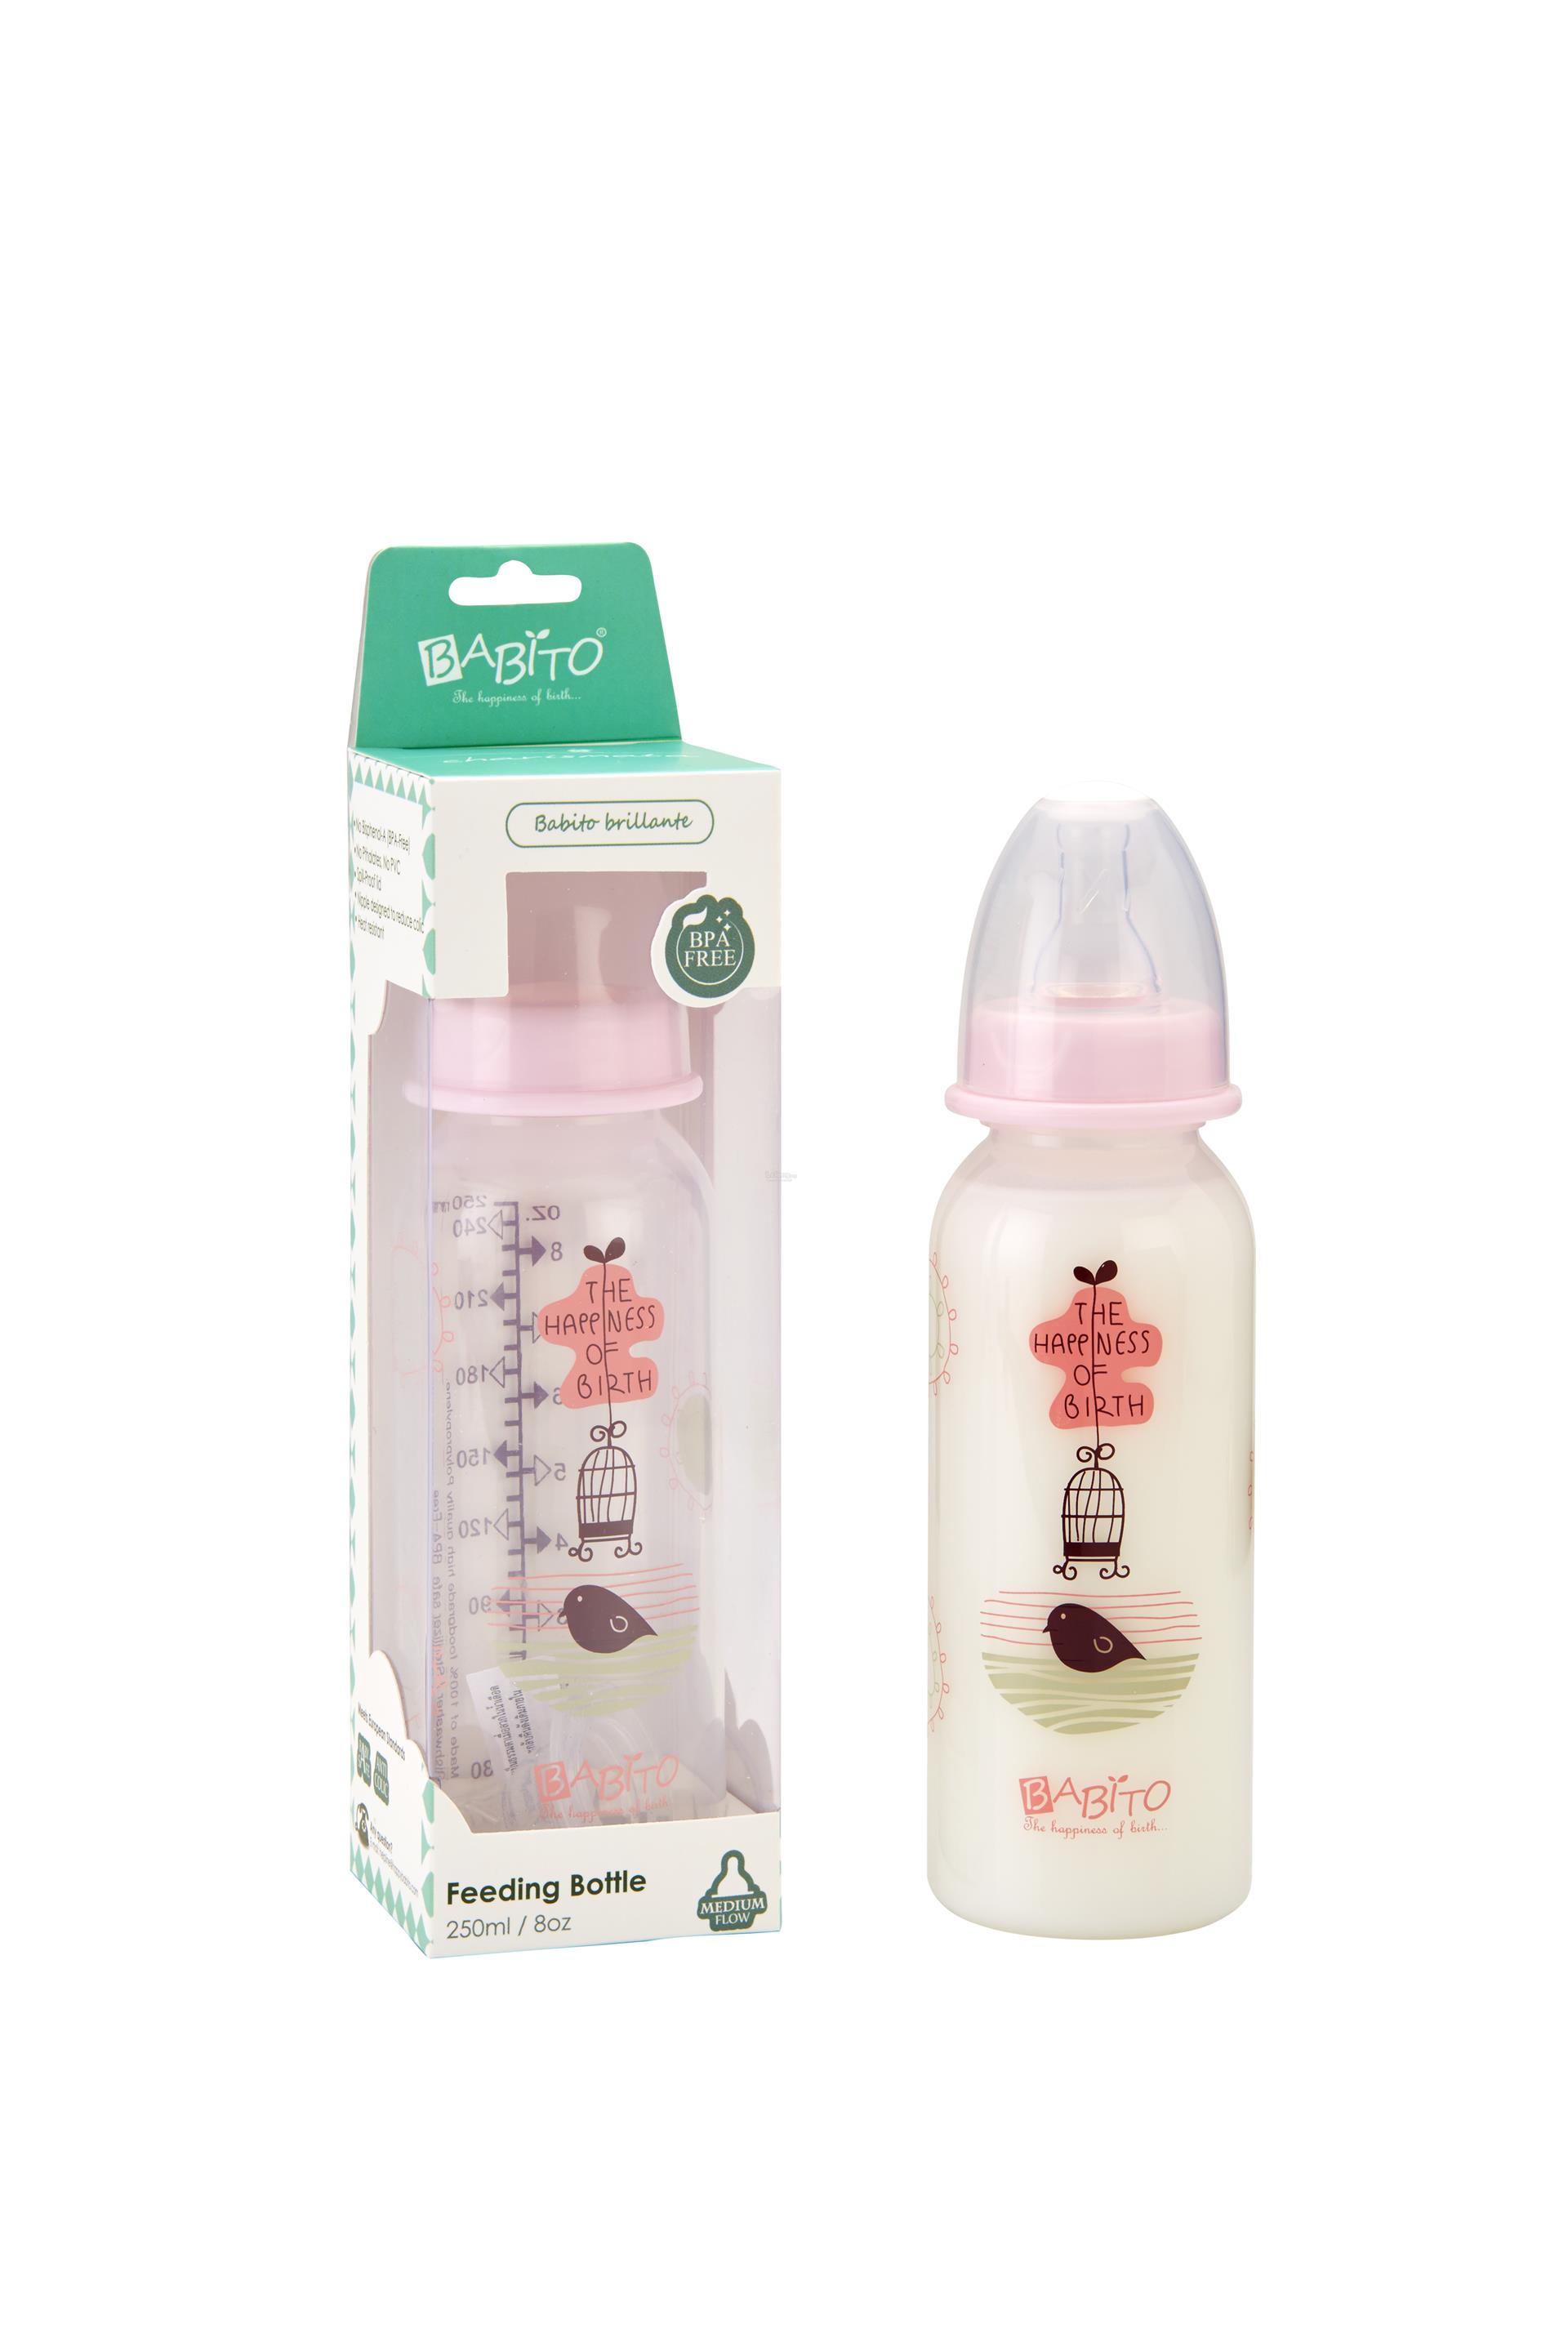 Babito Baby Feeding Bottle 8oz/250ml Charismata (Pink)